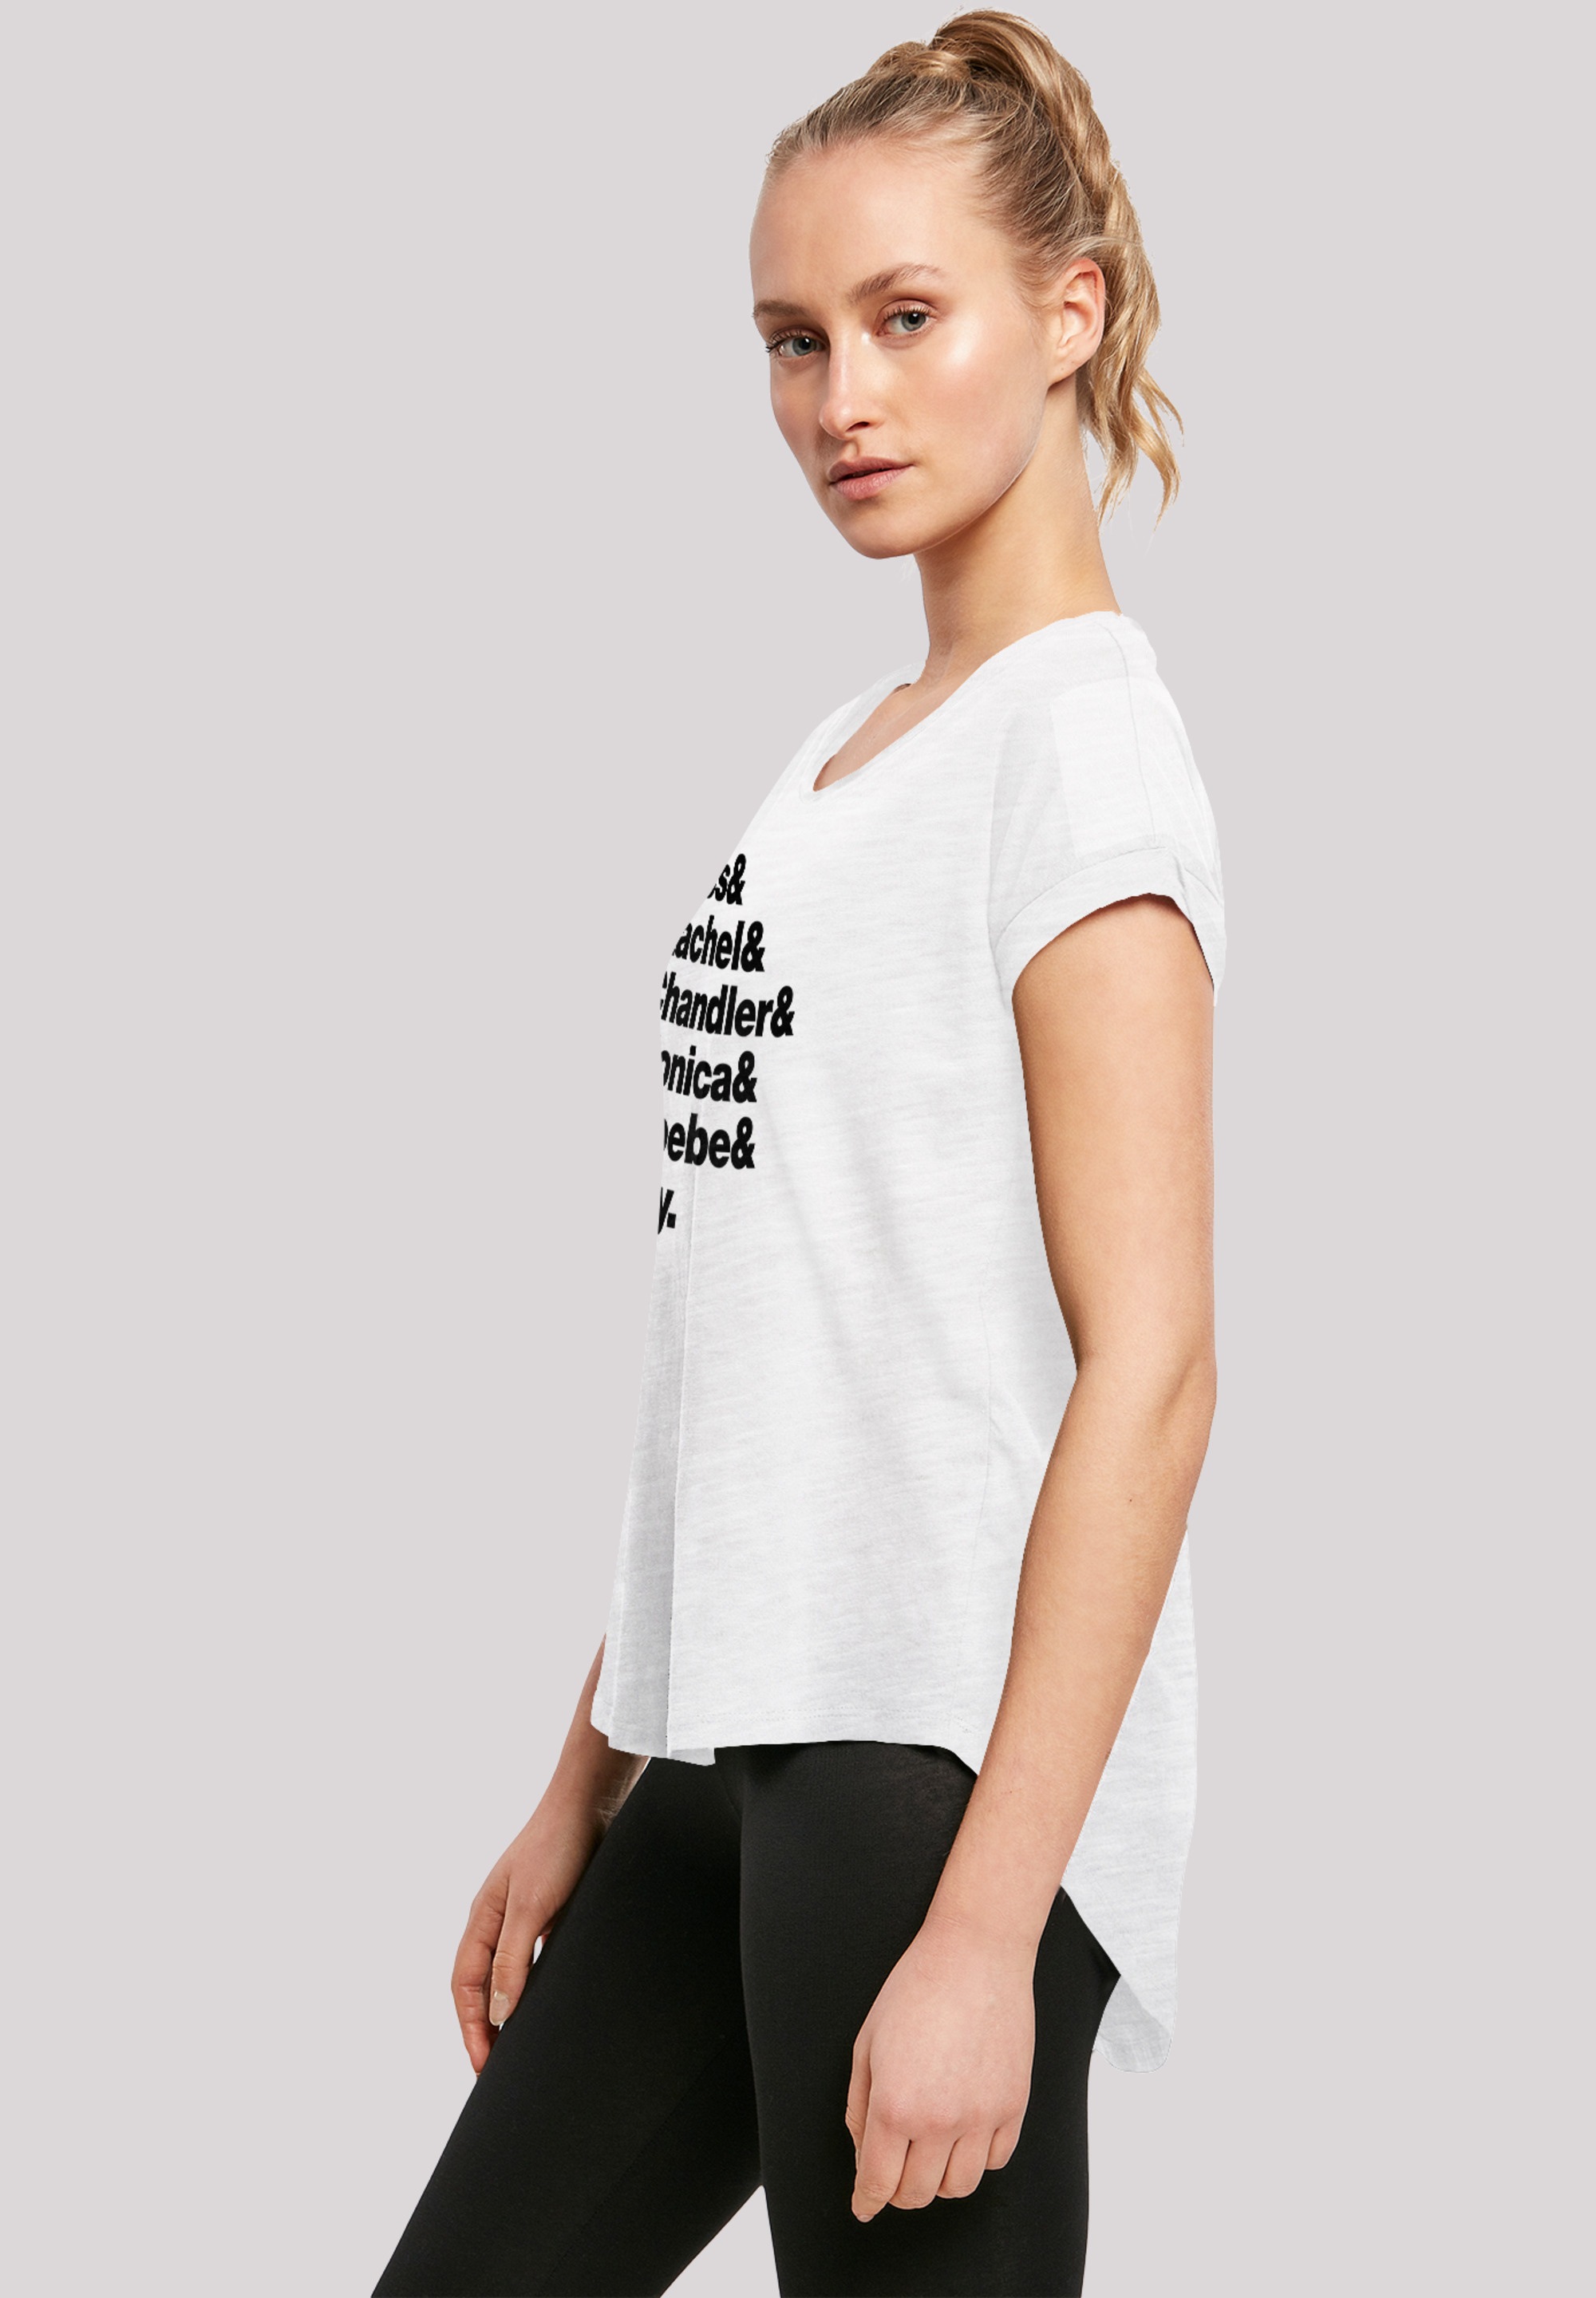 F4NT4STIC T-Shirt Print & Ross & & Rachel Joey«, | & für BAUR bestellen Chandler »FRIENDS Phoebe & Monica